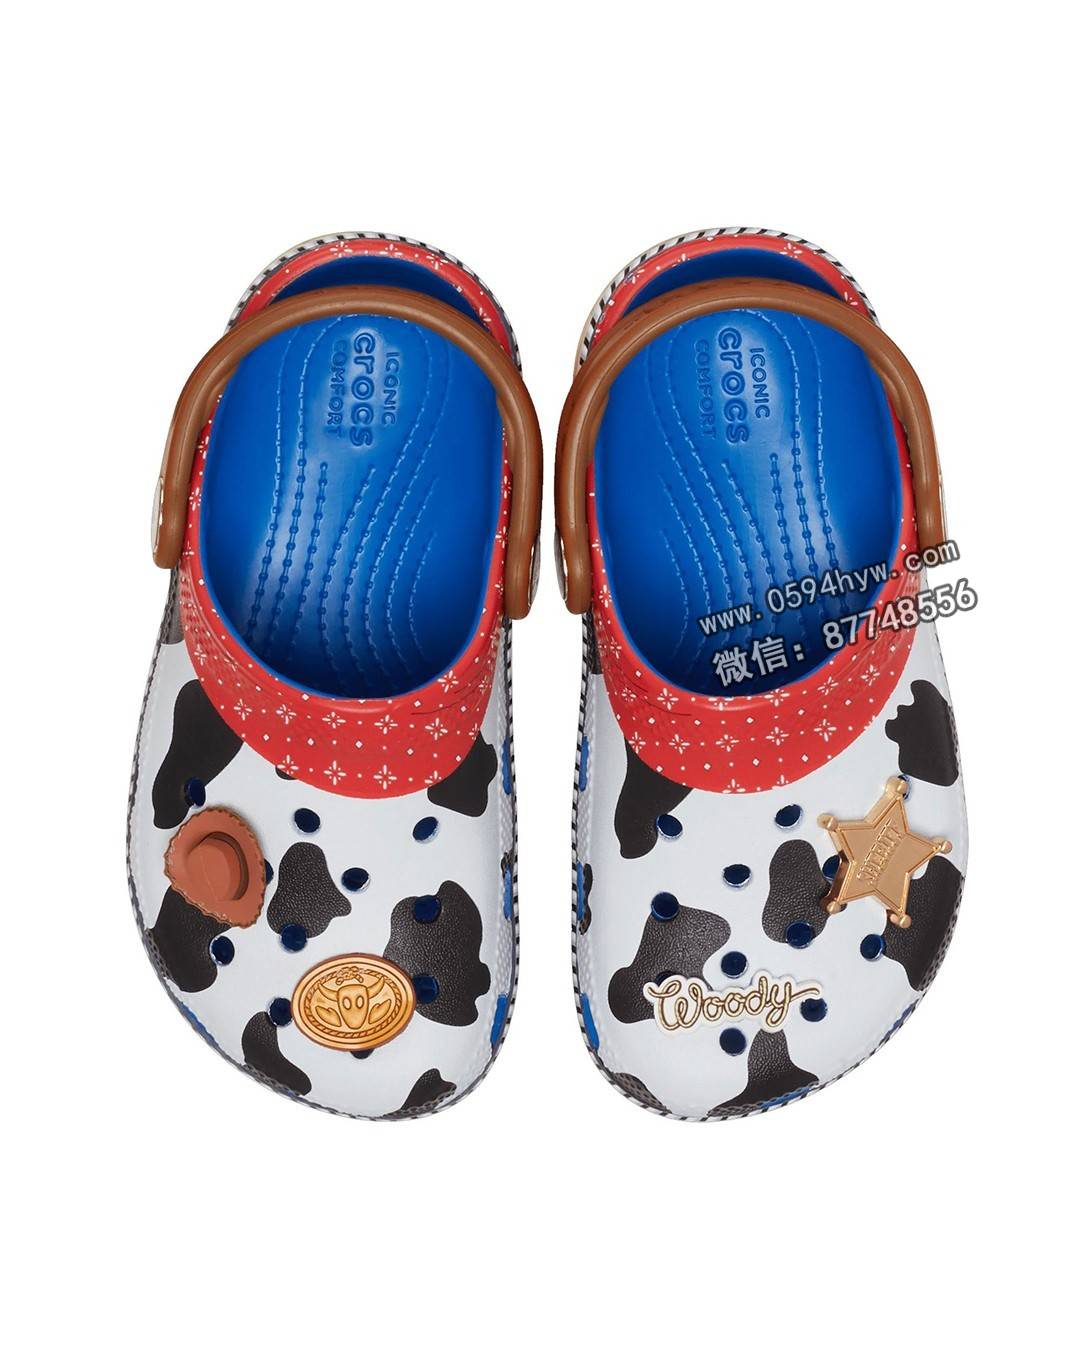 揭秘：Crocs与《玩具总动员》携手推出时尚鞋款！你钟爱其中哪双？